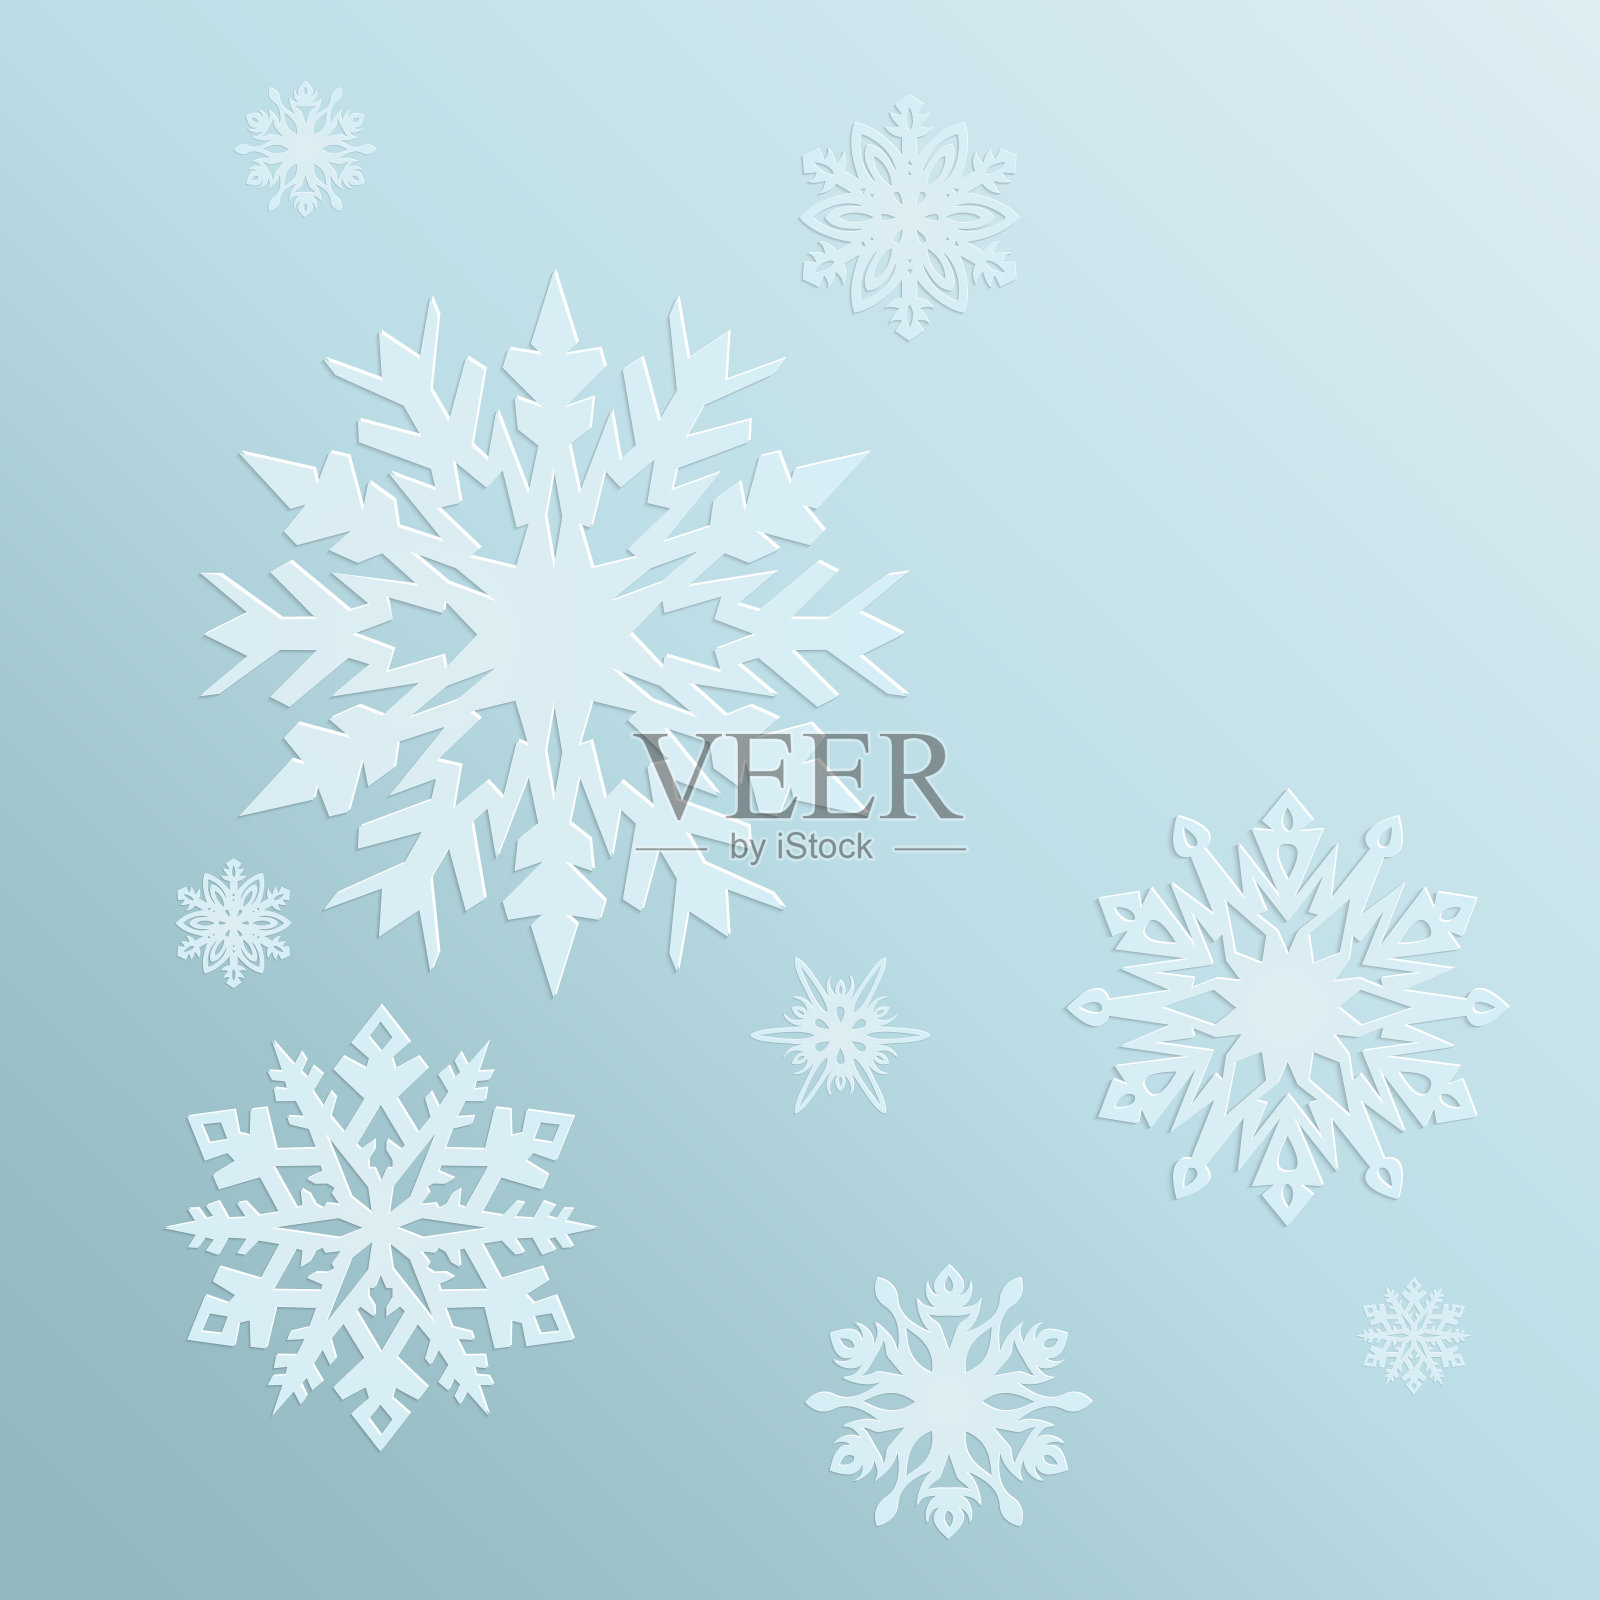 蓝色背景与雪花在寒冷的冬天。一张圣诞卡或假日卡片。向量插画图片素材